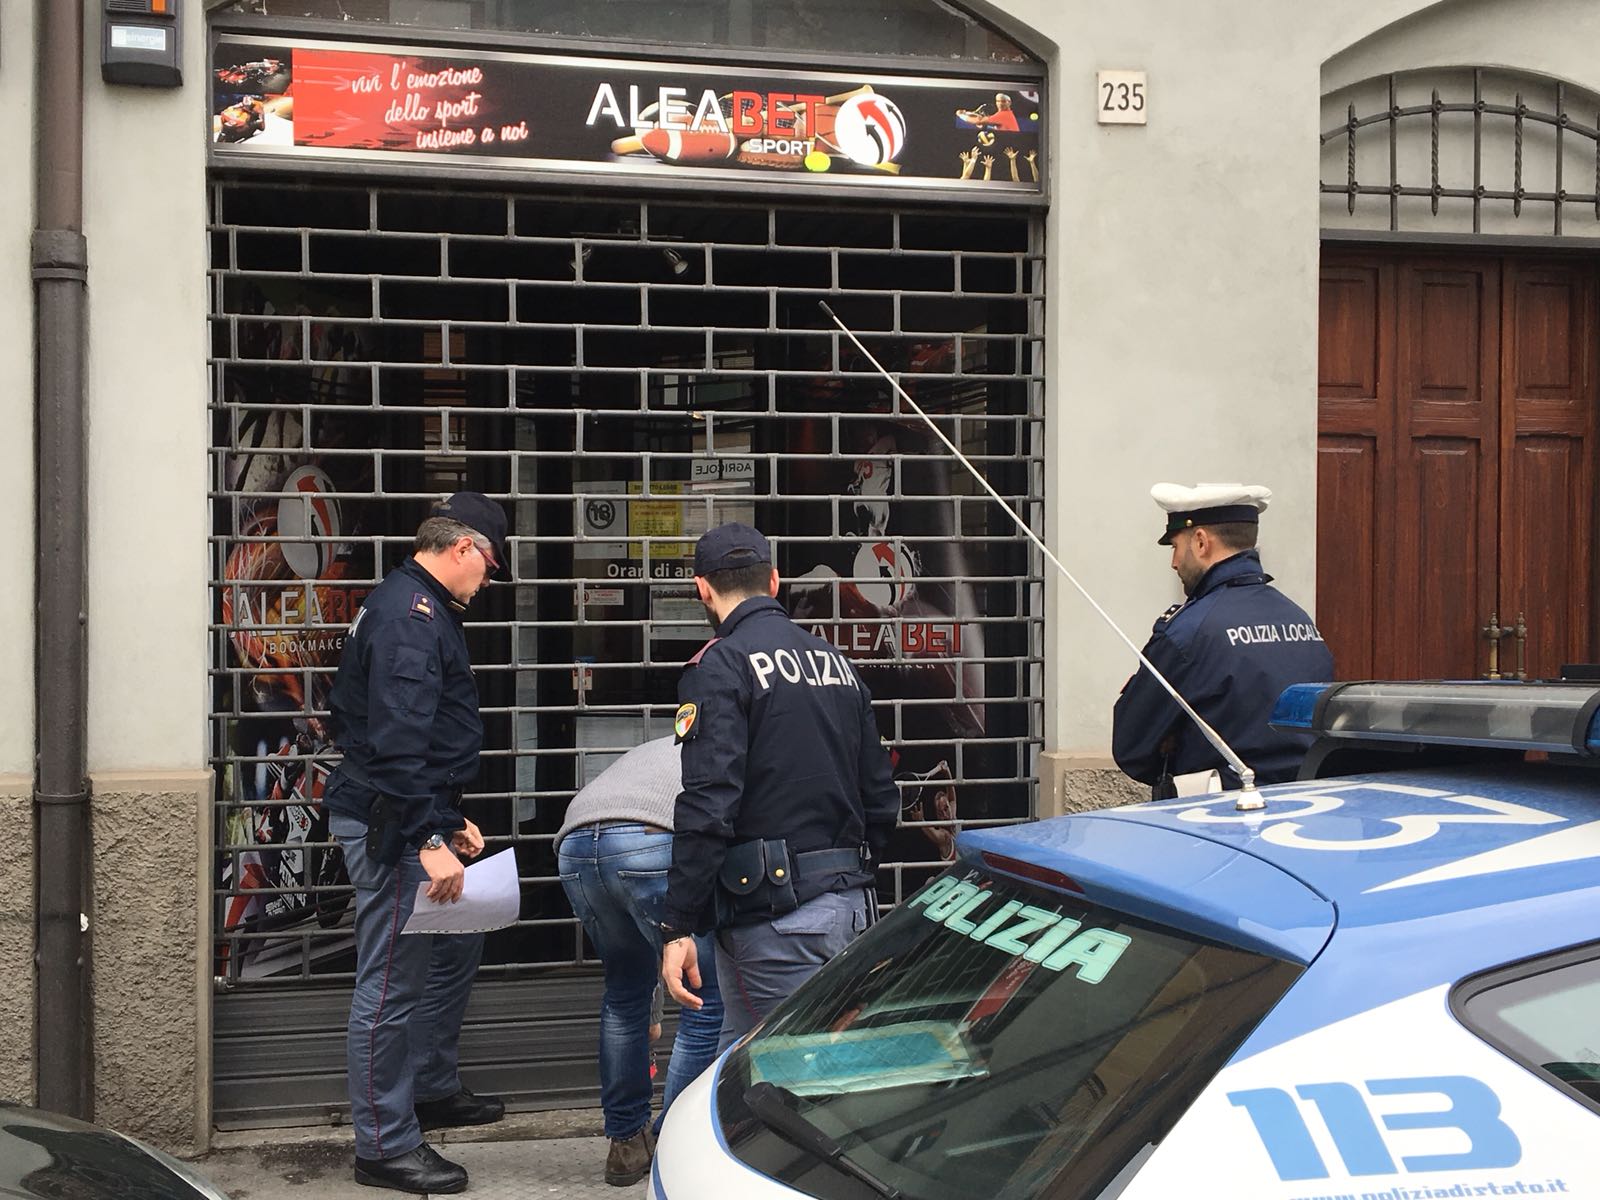 Mancano le autorizzazioni: la Polizia fa chiudere la sala scommesse “ALAE BET” a Cremona  in Via Dante.